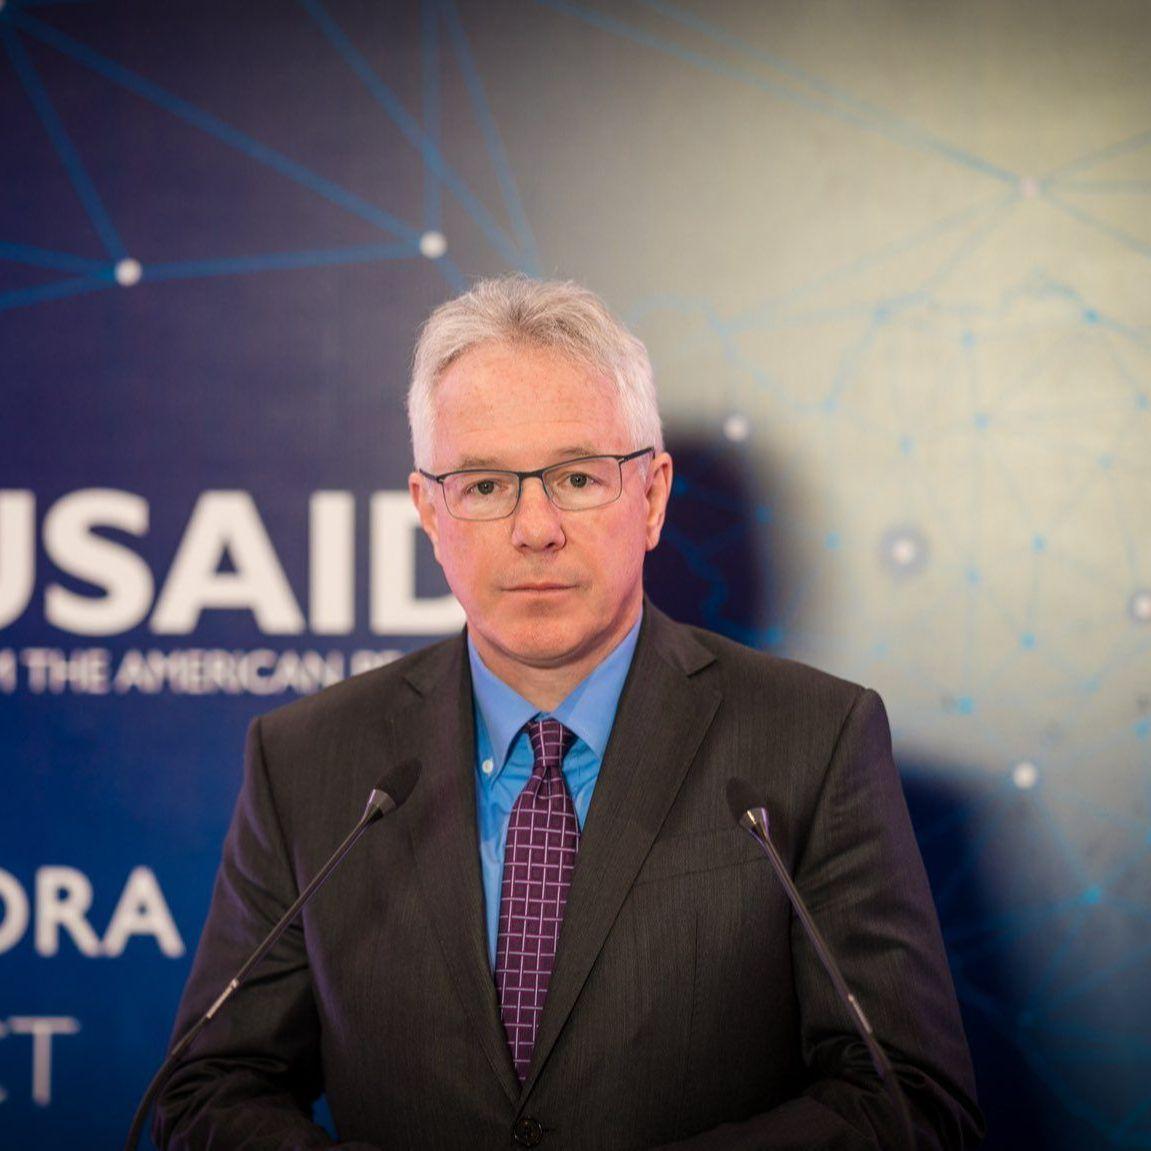 Ambasada SAD: Činjenice o napadu na Markale su dobro utvrđene i nepromjenjive